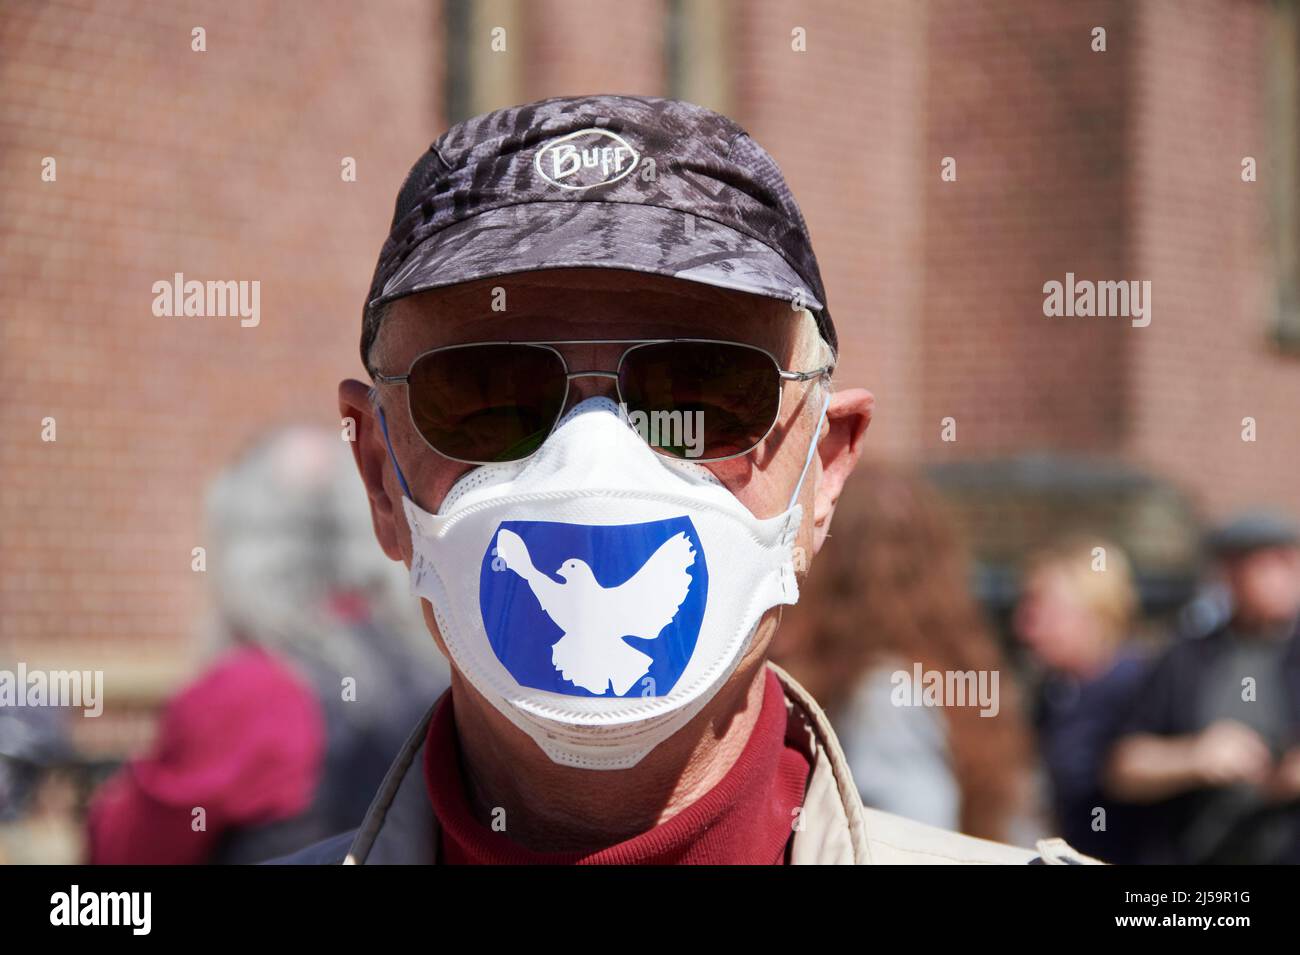 Ein Mann der an einem Ostermarsch teilnimmt traegt Sonnebrille, Capie, und eine FFP 2 Maske mit einem Aufkleber auf dem die Friedenstaube zu sehen ist Banque D'Images